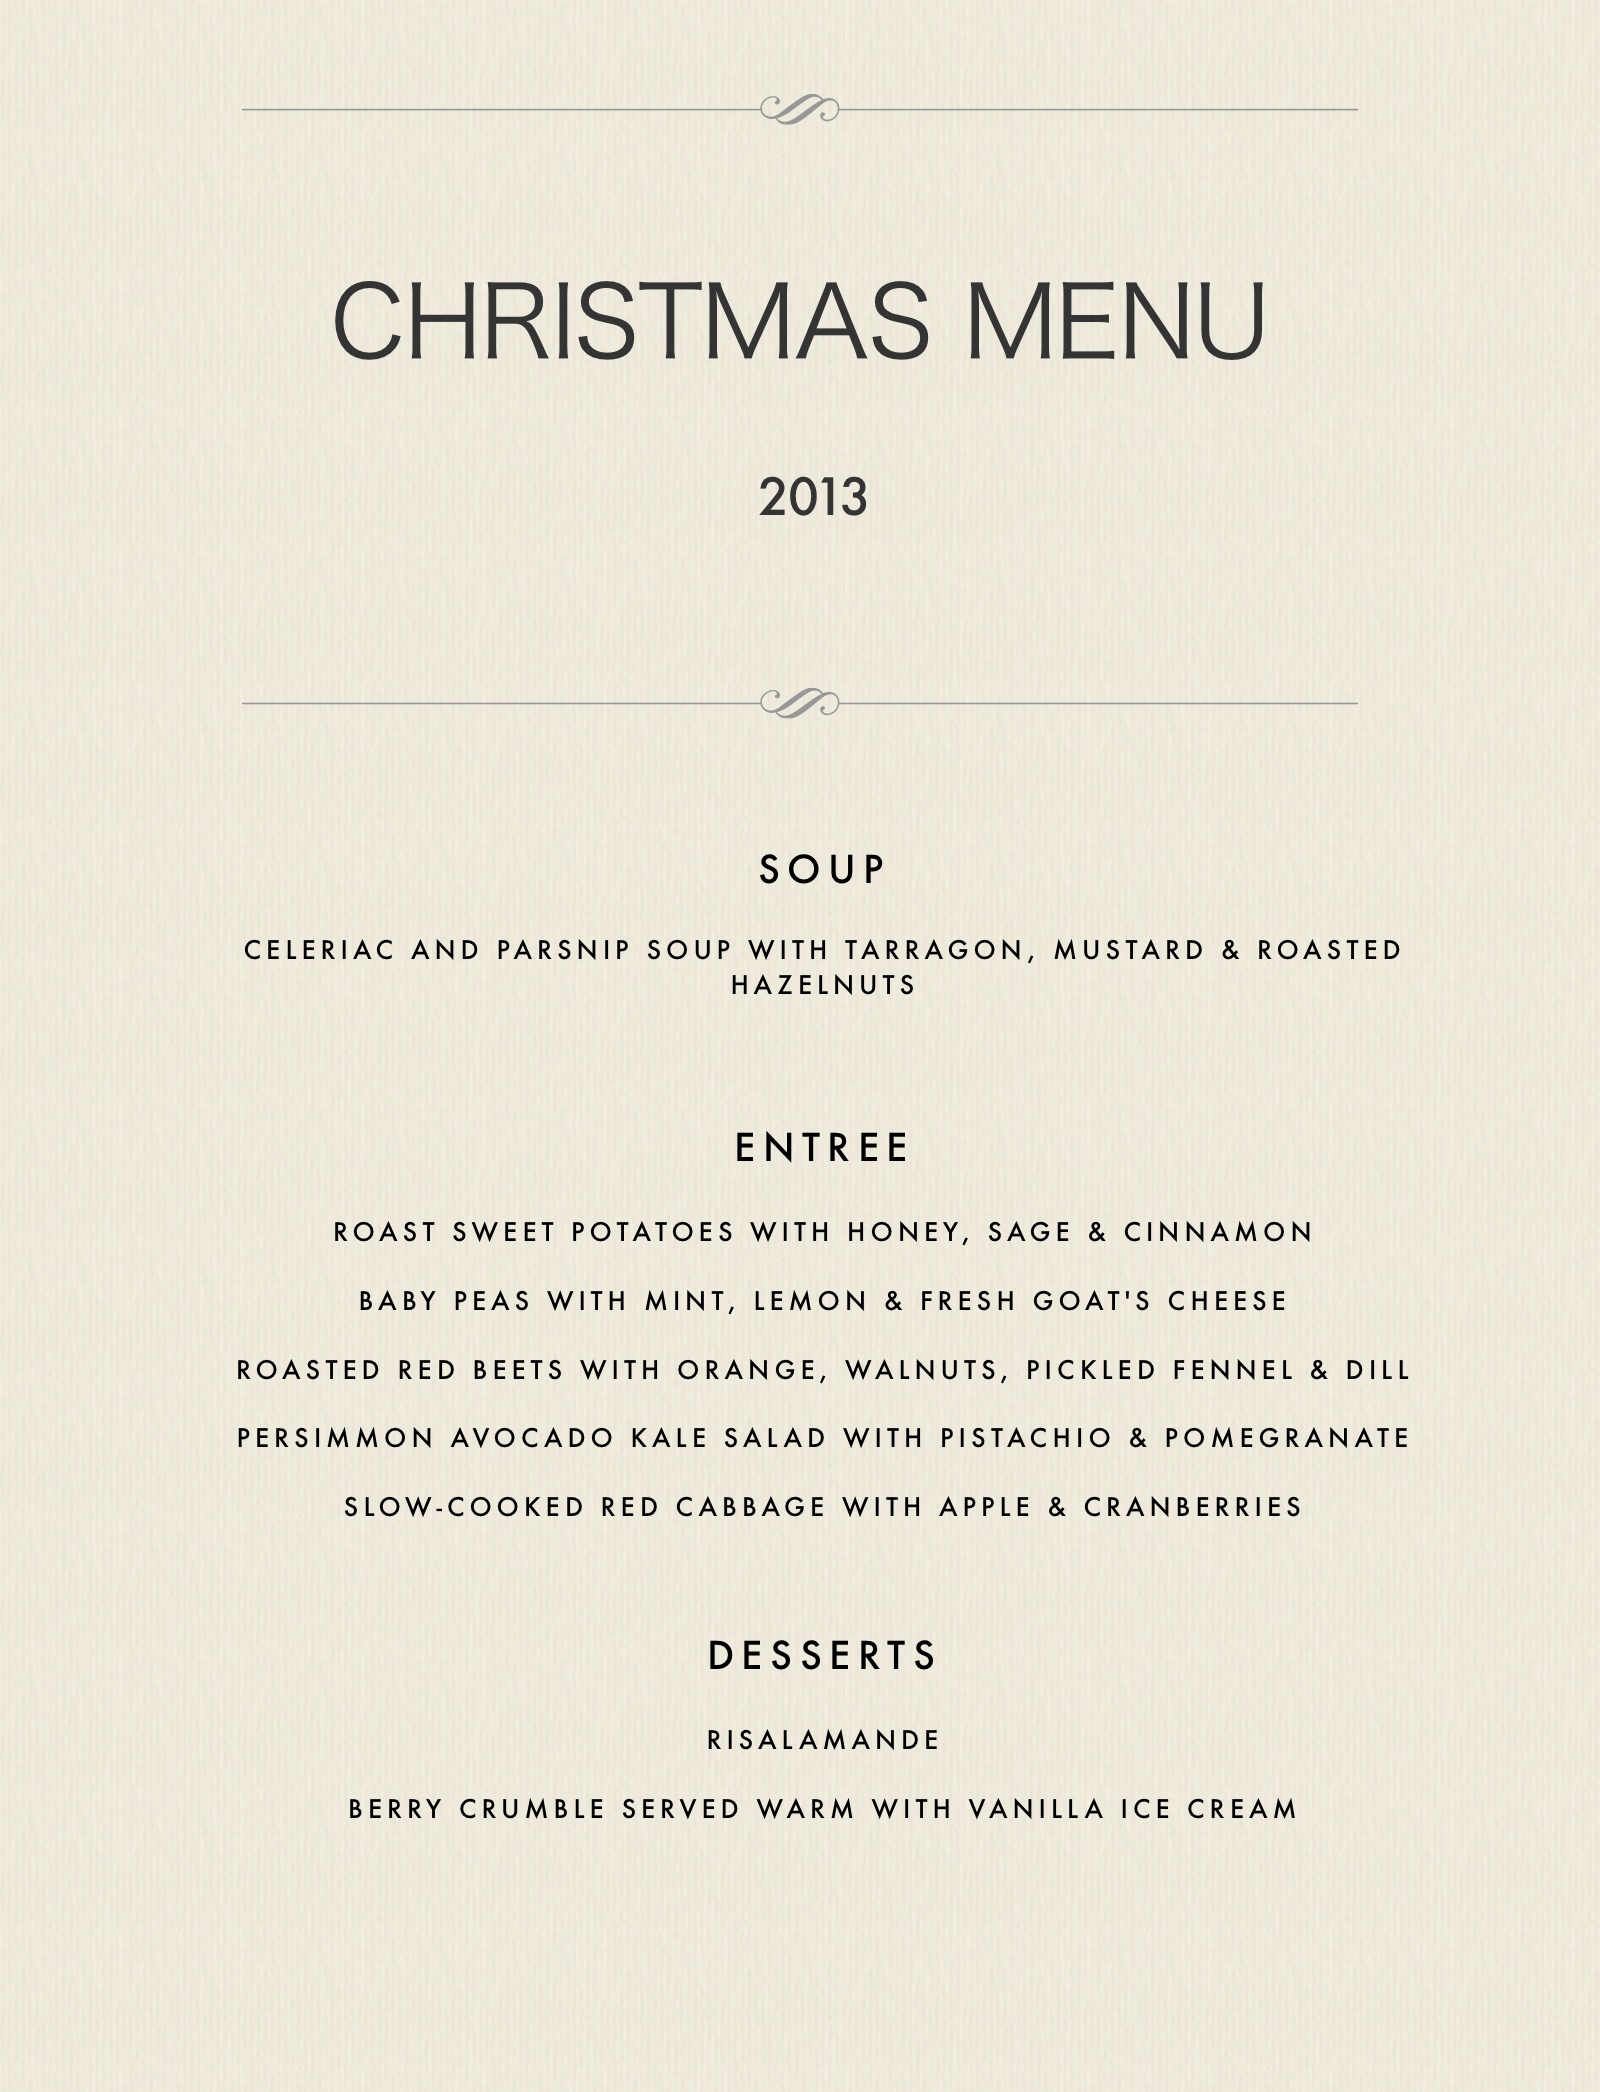 Christmas menu 2013